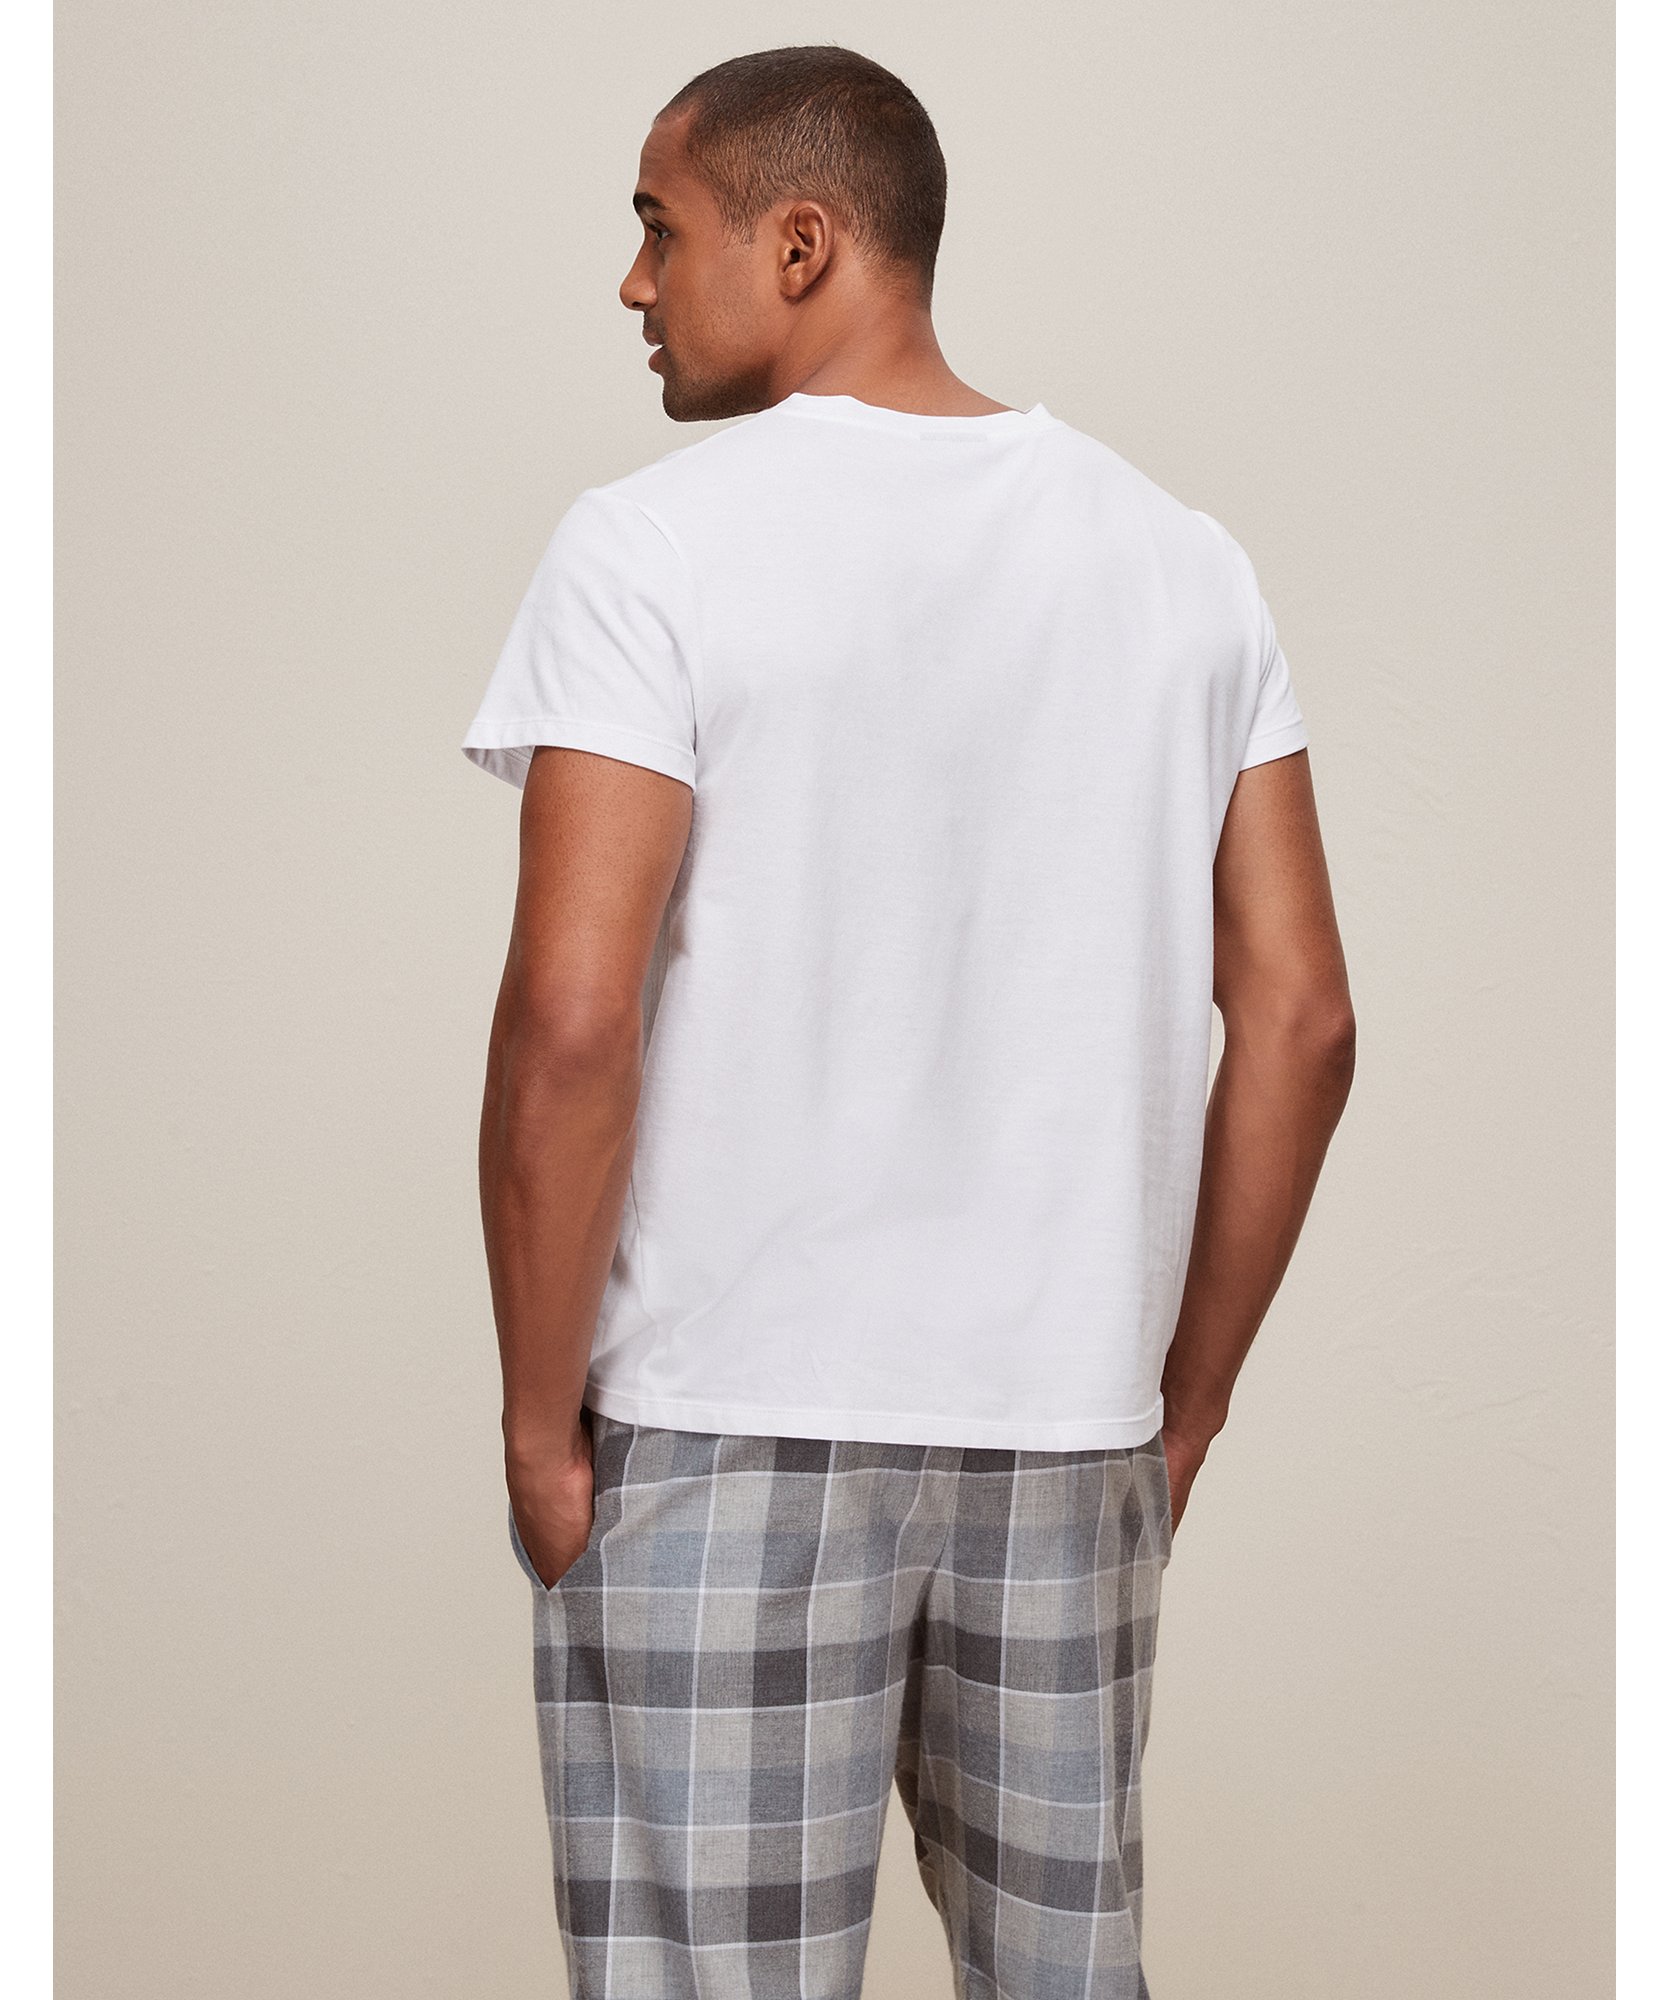 Men’s Pyjama Top M The White Company Men Clothing Loungewear Pajamas 